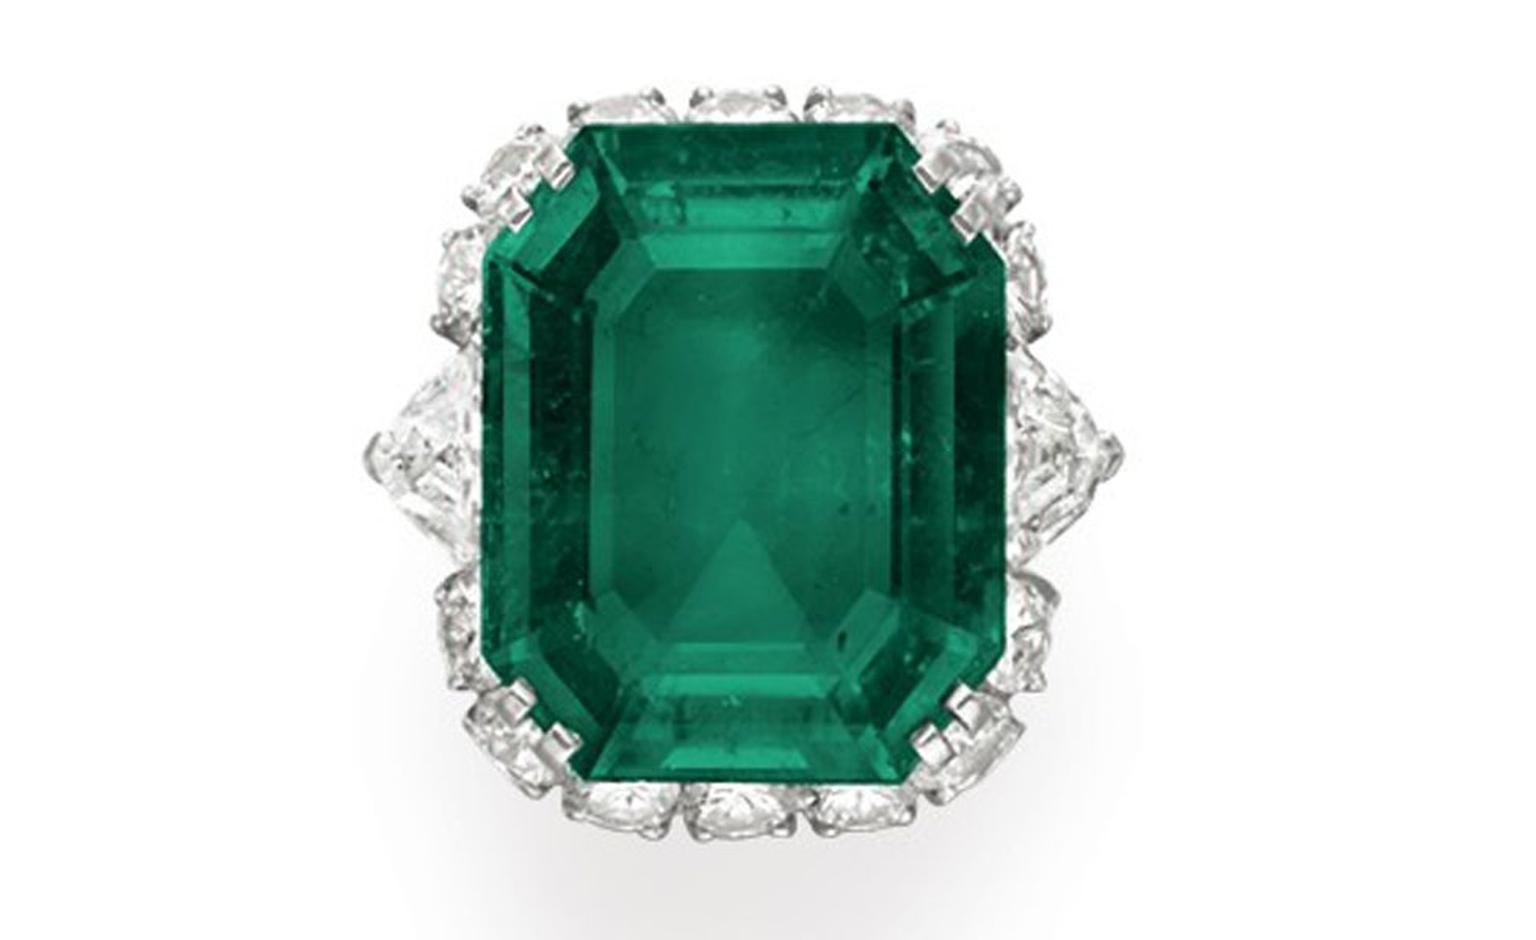 Bulgari Emerald Suite Ring, estimate: $600,000 -800,000